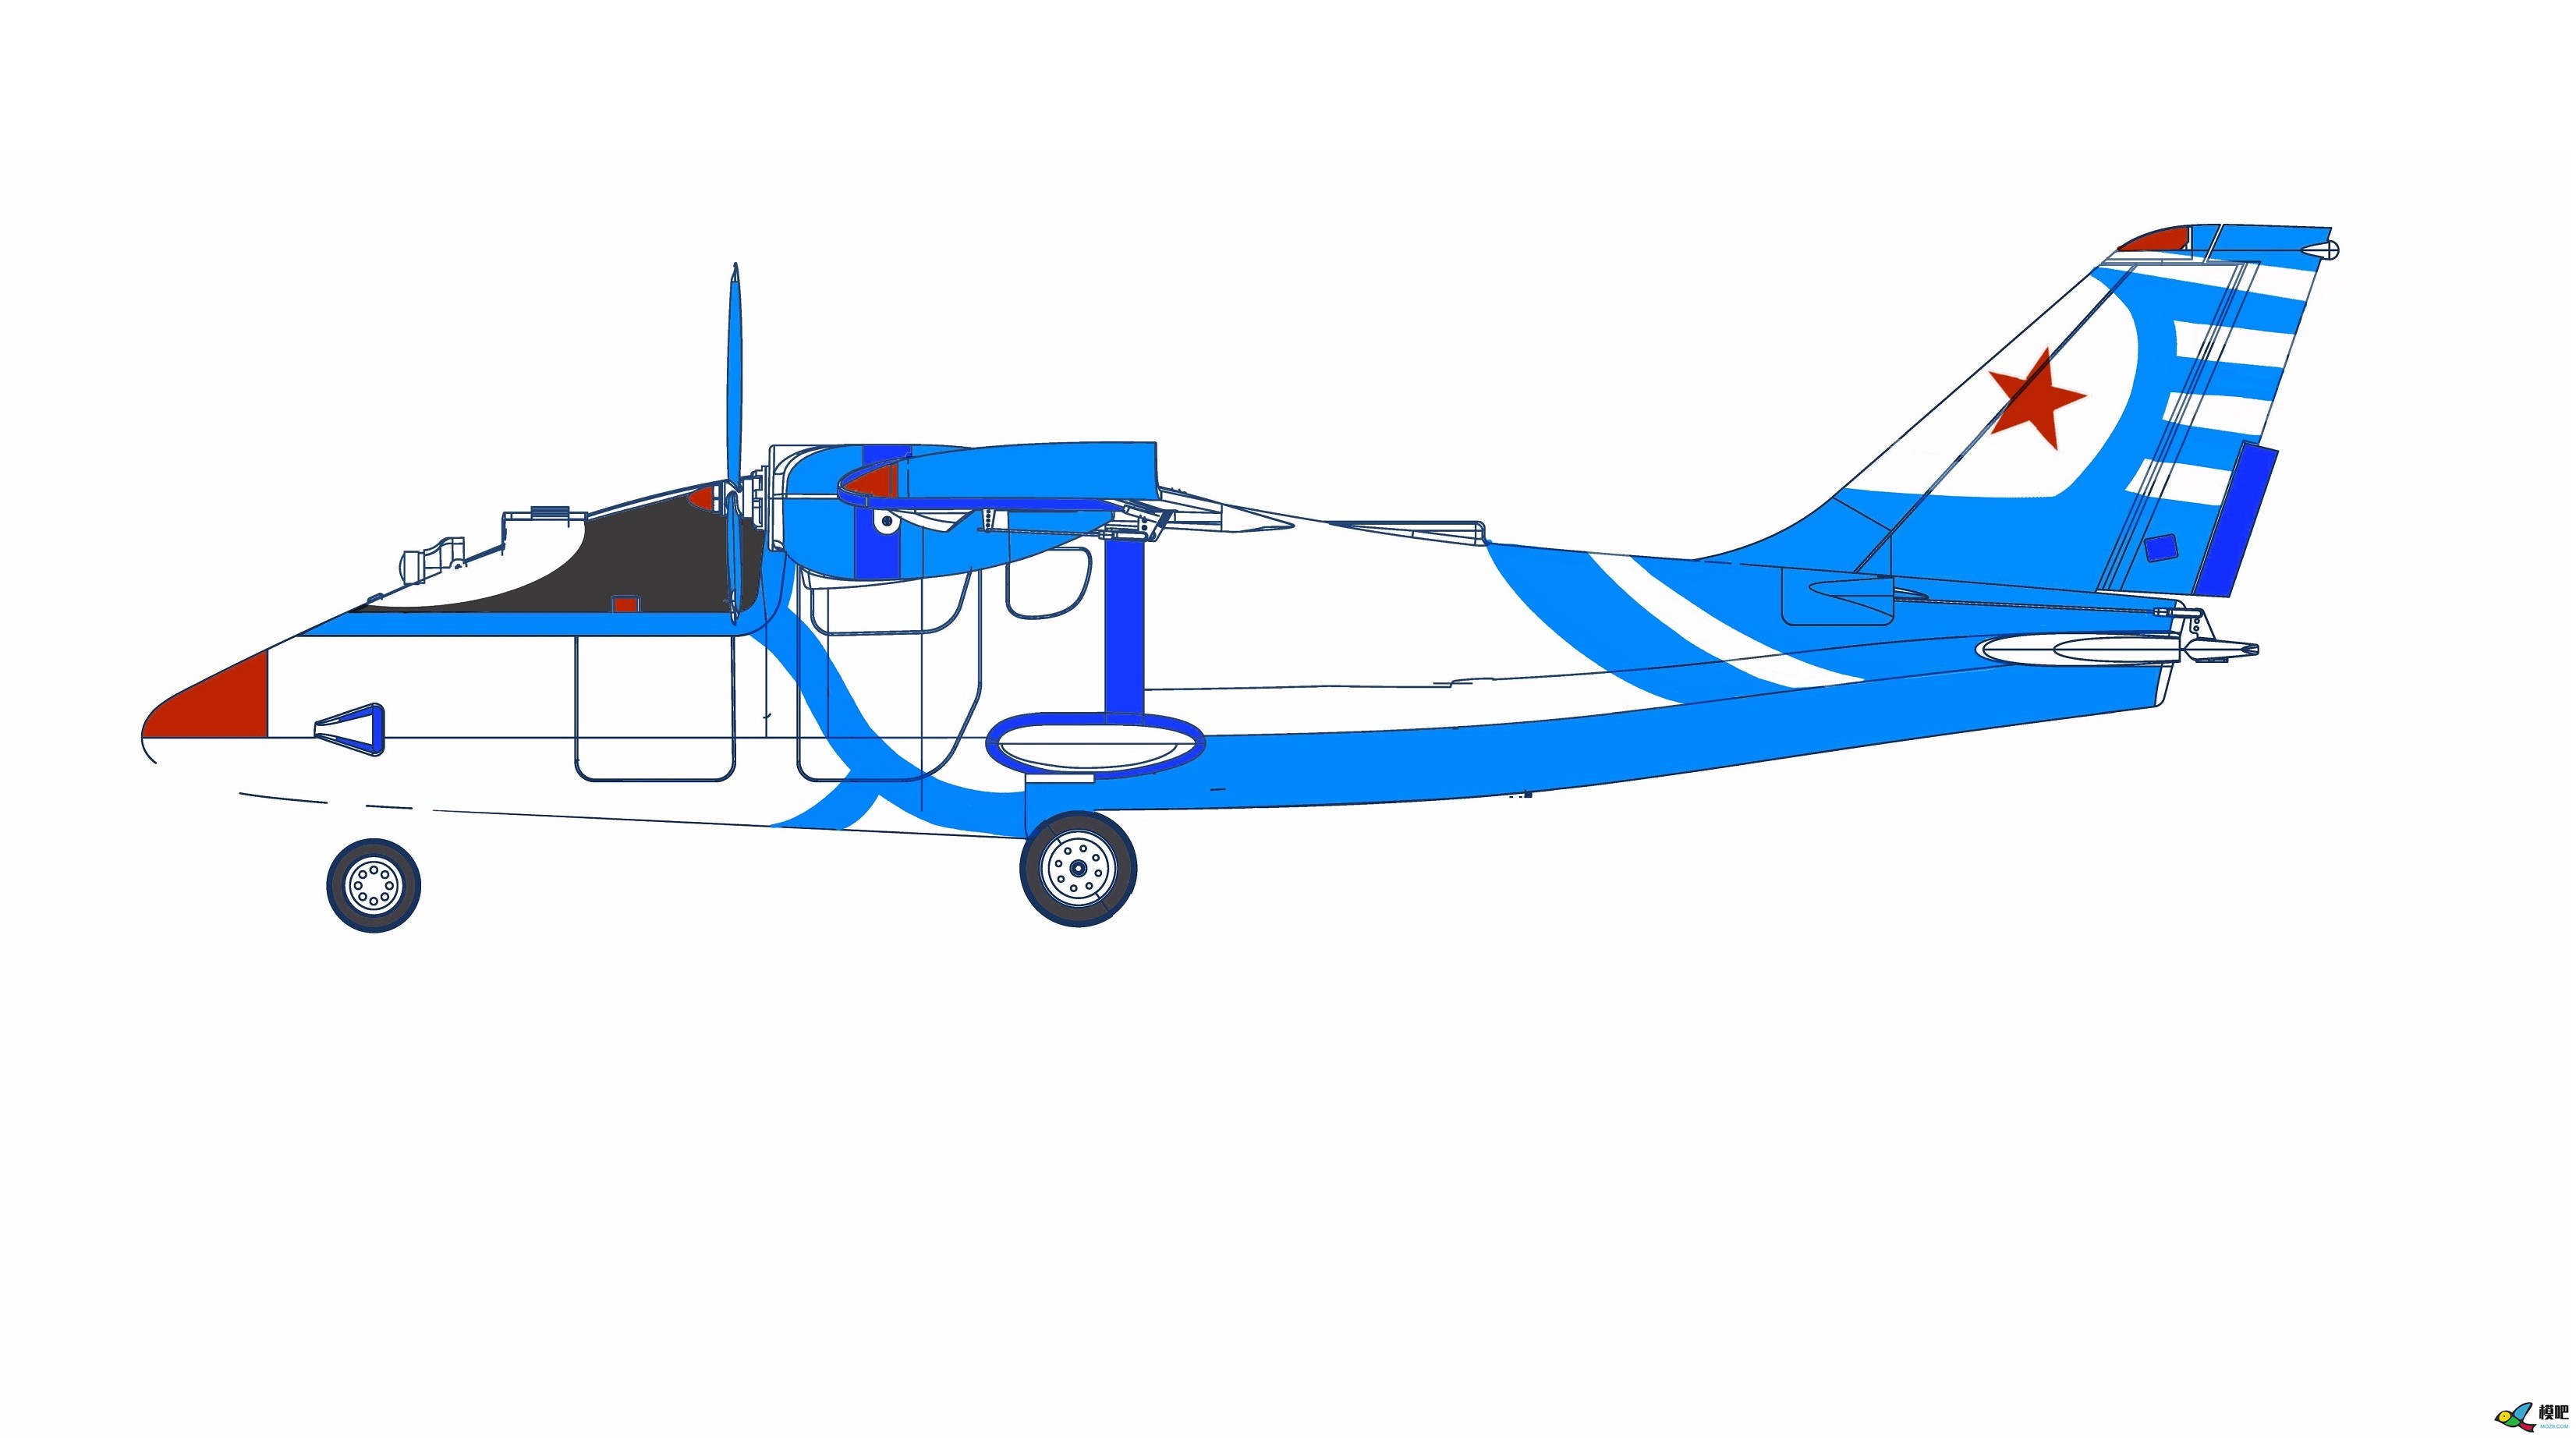 2020年第七期免费送模型：中航电Binary班纳瑞FPV飞机涂装大赛  作者:飞舞天水间 482 